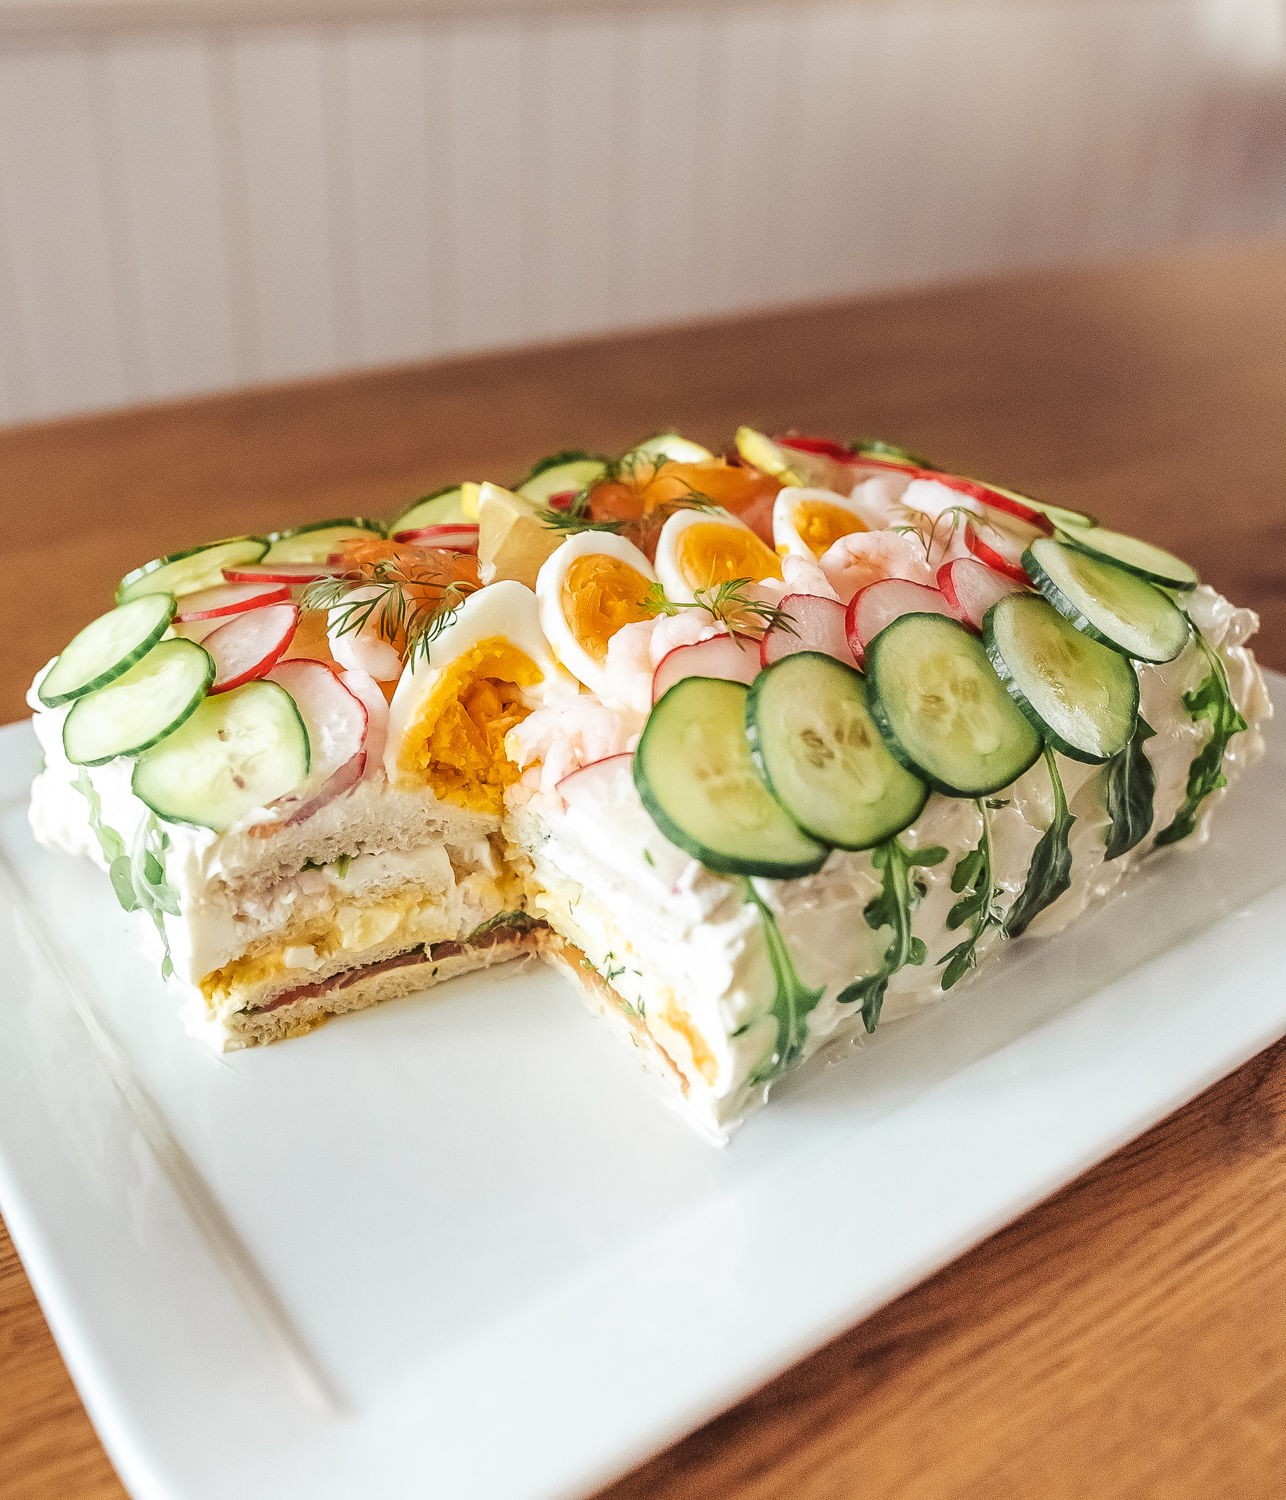 Smörgåstårta (Swedish Sandwich Cake)